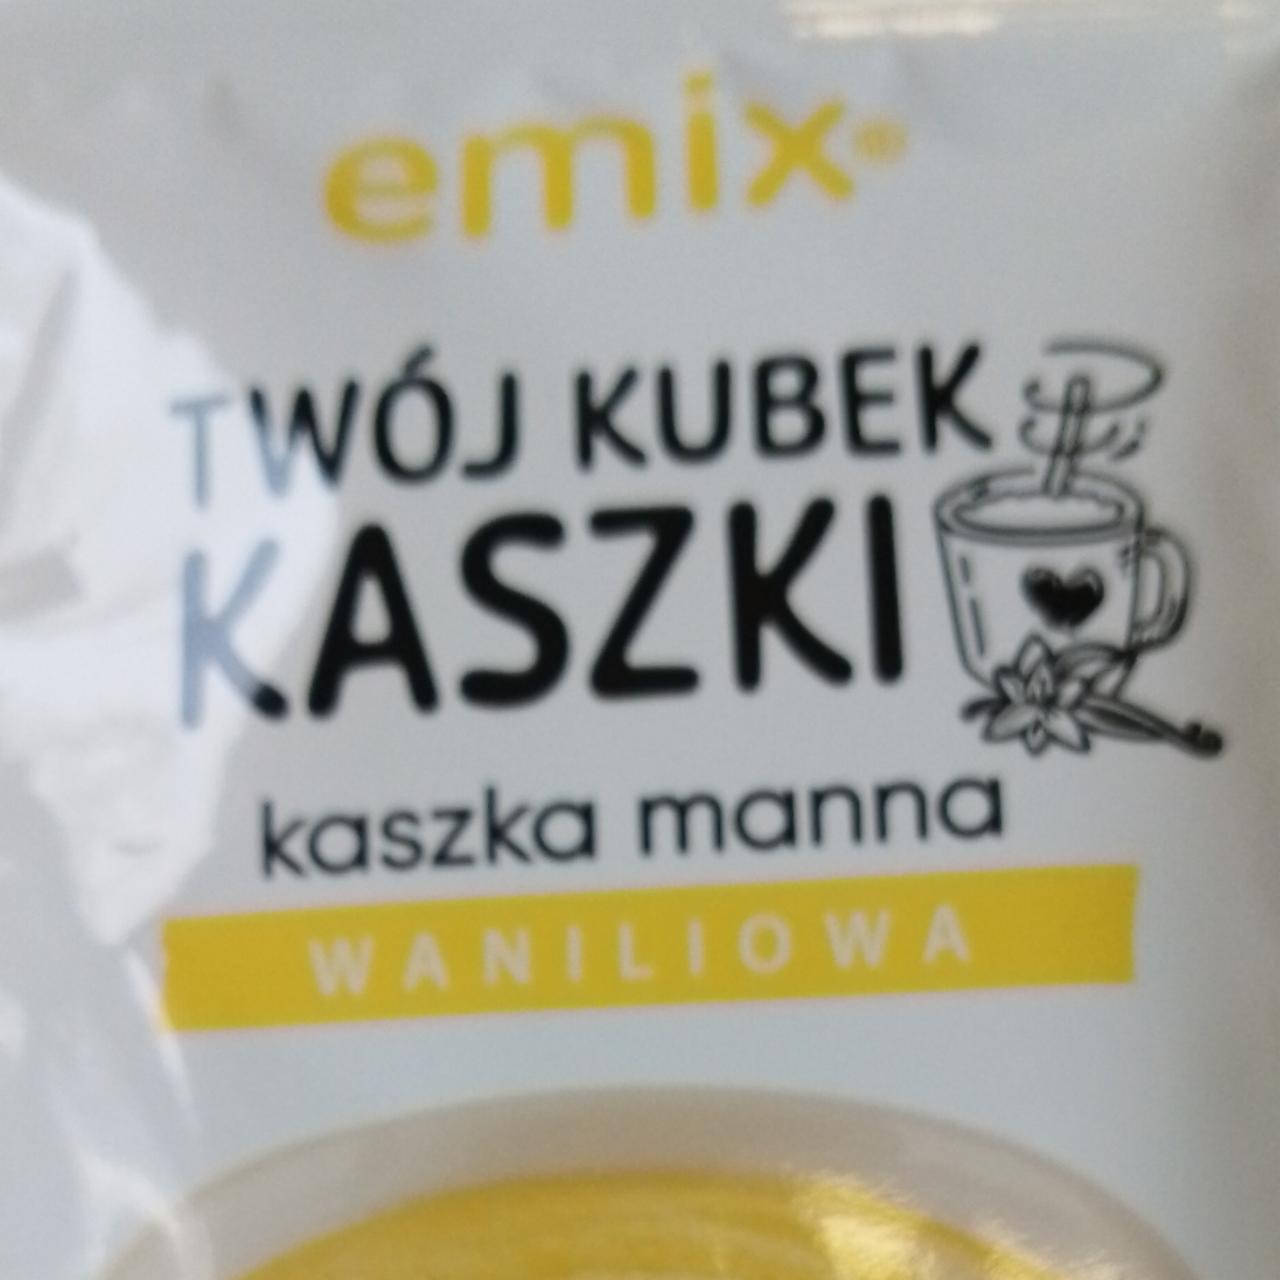 Zdjęcia - Twój kubek kaszki kaszka manna o smaku waniliowym Emix